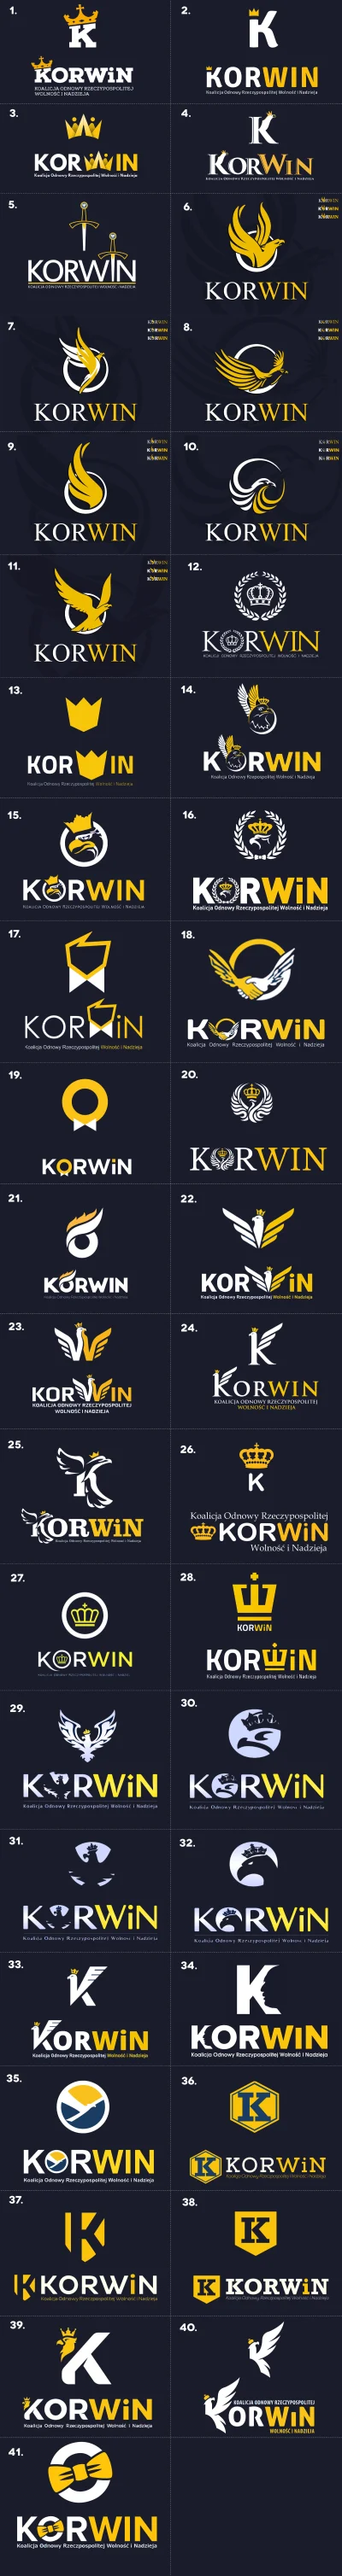 -18 - #ranking logotypow #jkm #korwin